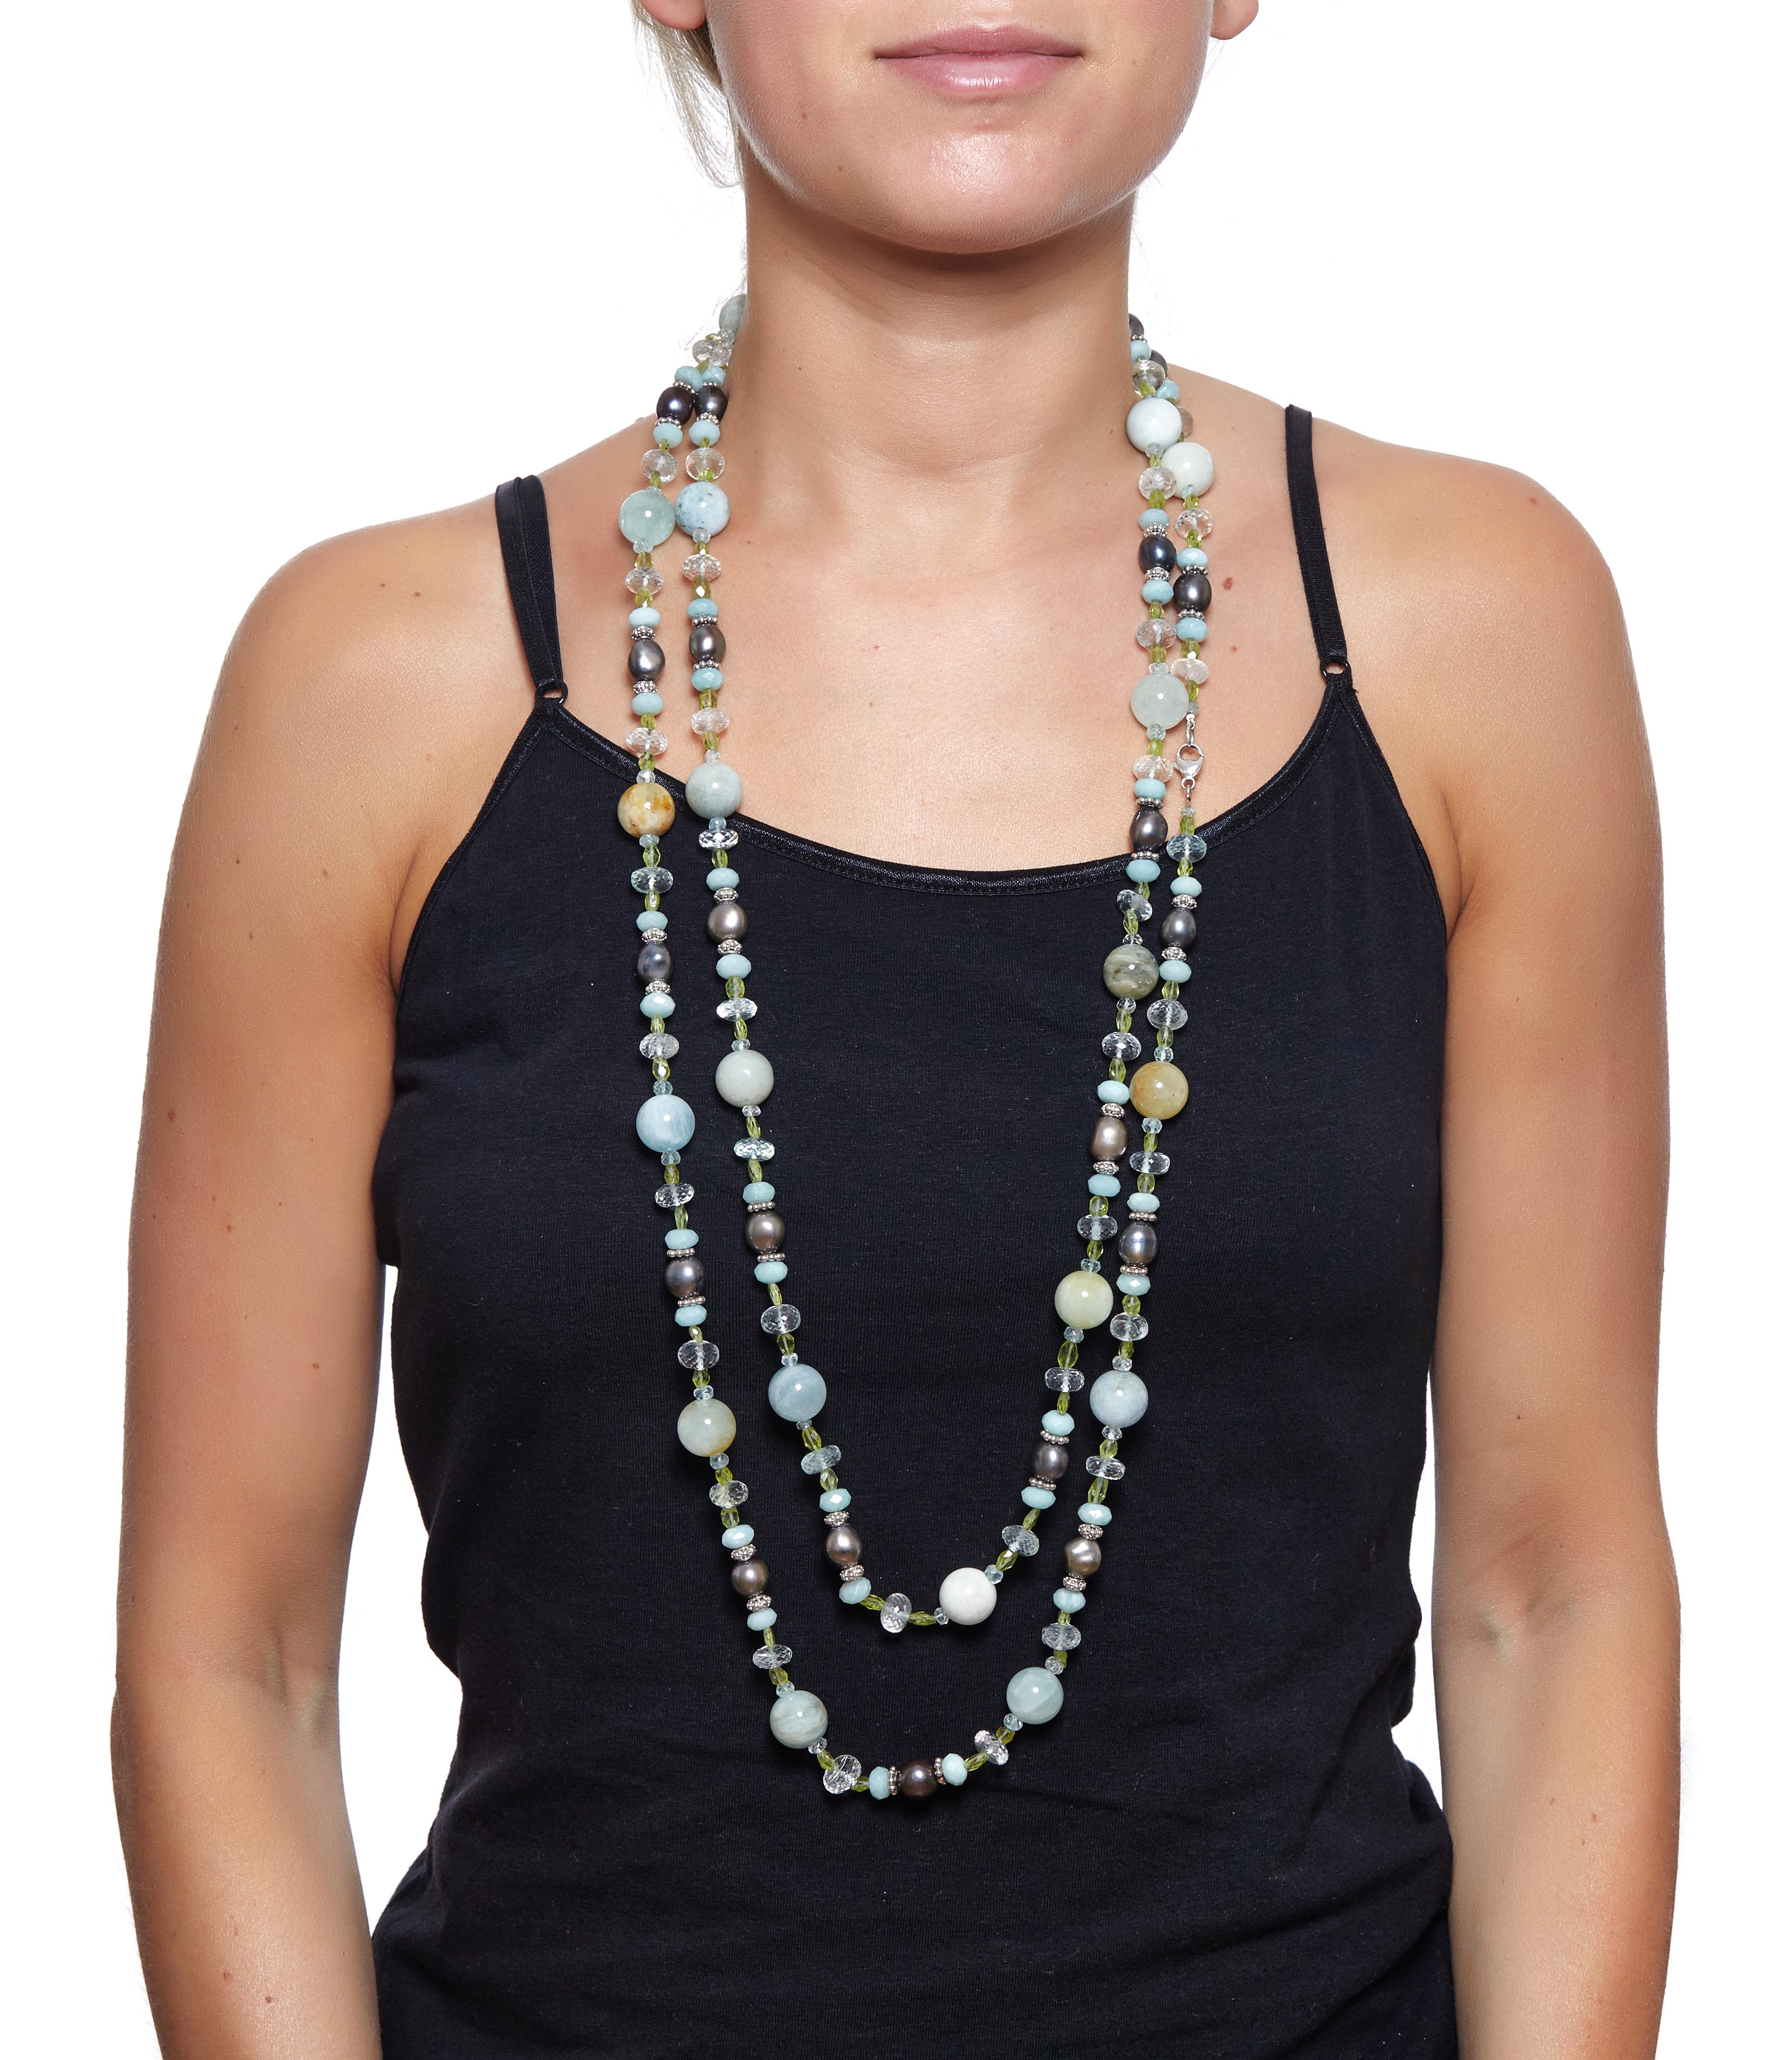 Bijoux Sabrina Balsky
Un collier de pierres fines de qualité, fait à la main, d'une longueur de 62 pouces, composé de perles d'aigue-marine naturelles de 14 mm, de perles d'eau douce noires et de rondelles d'amazonite à facettes,  Des rondelles